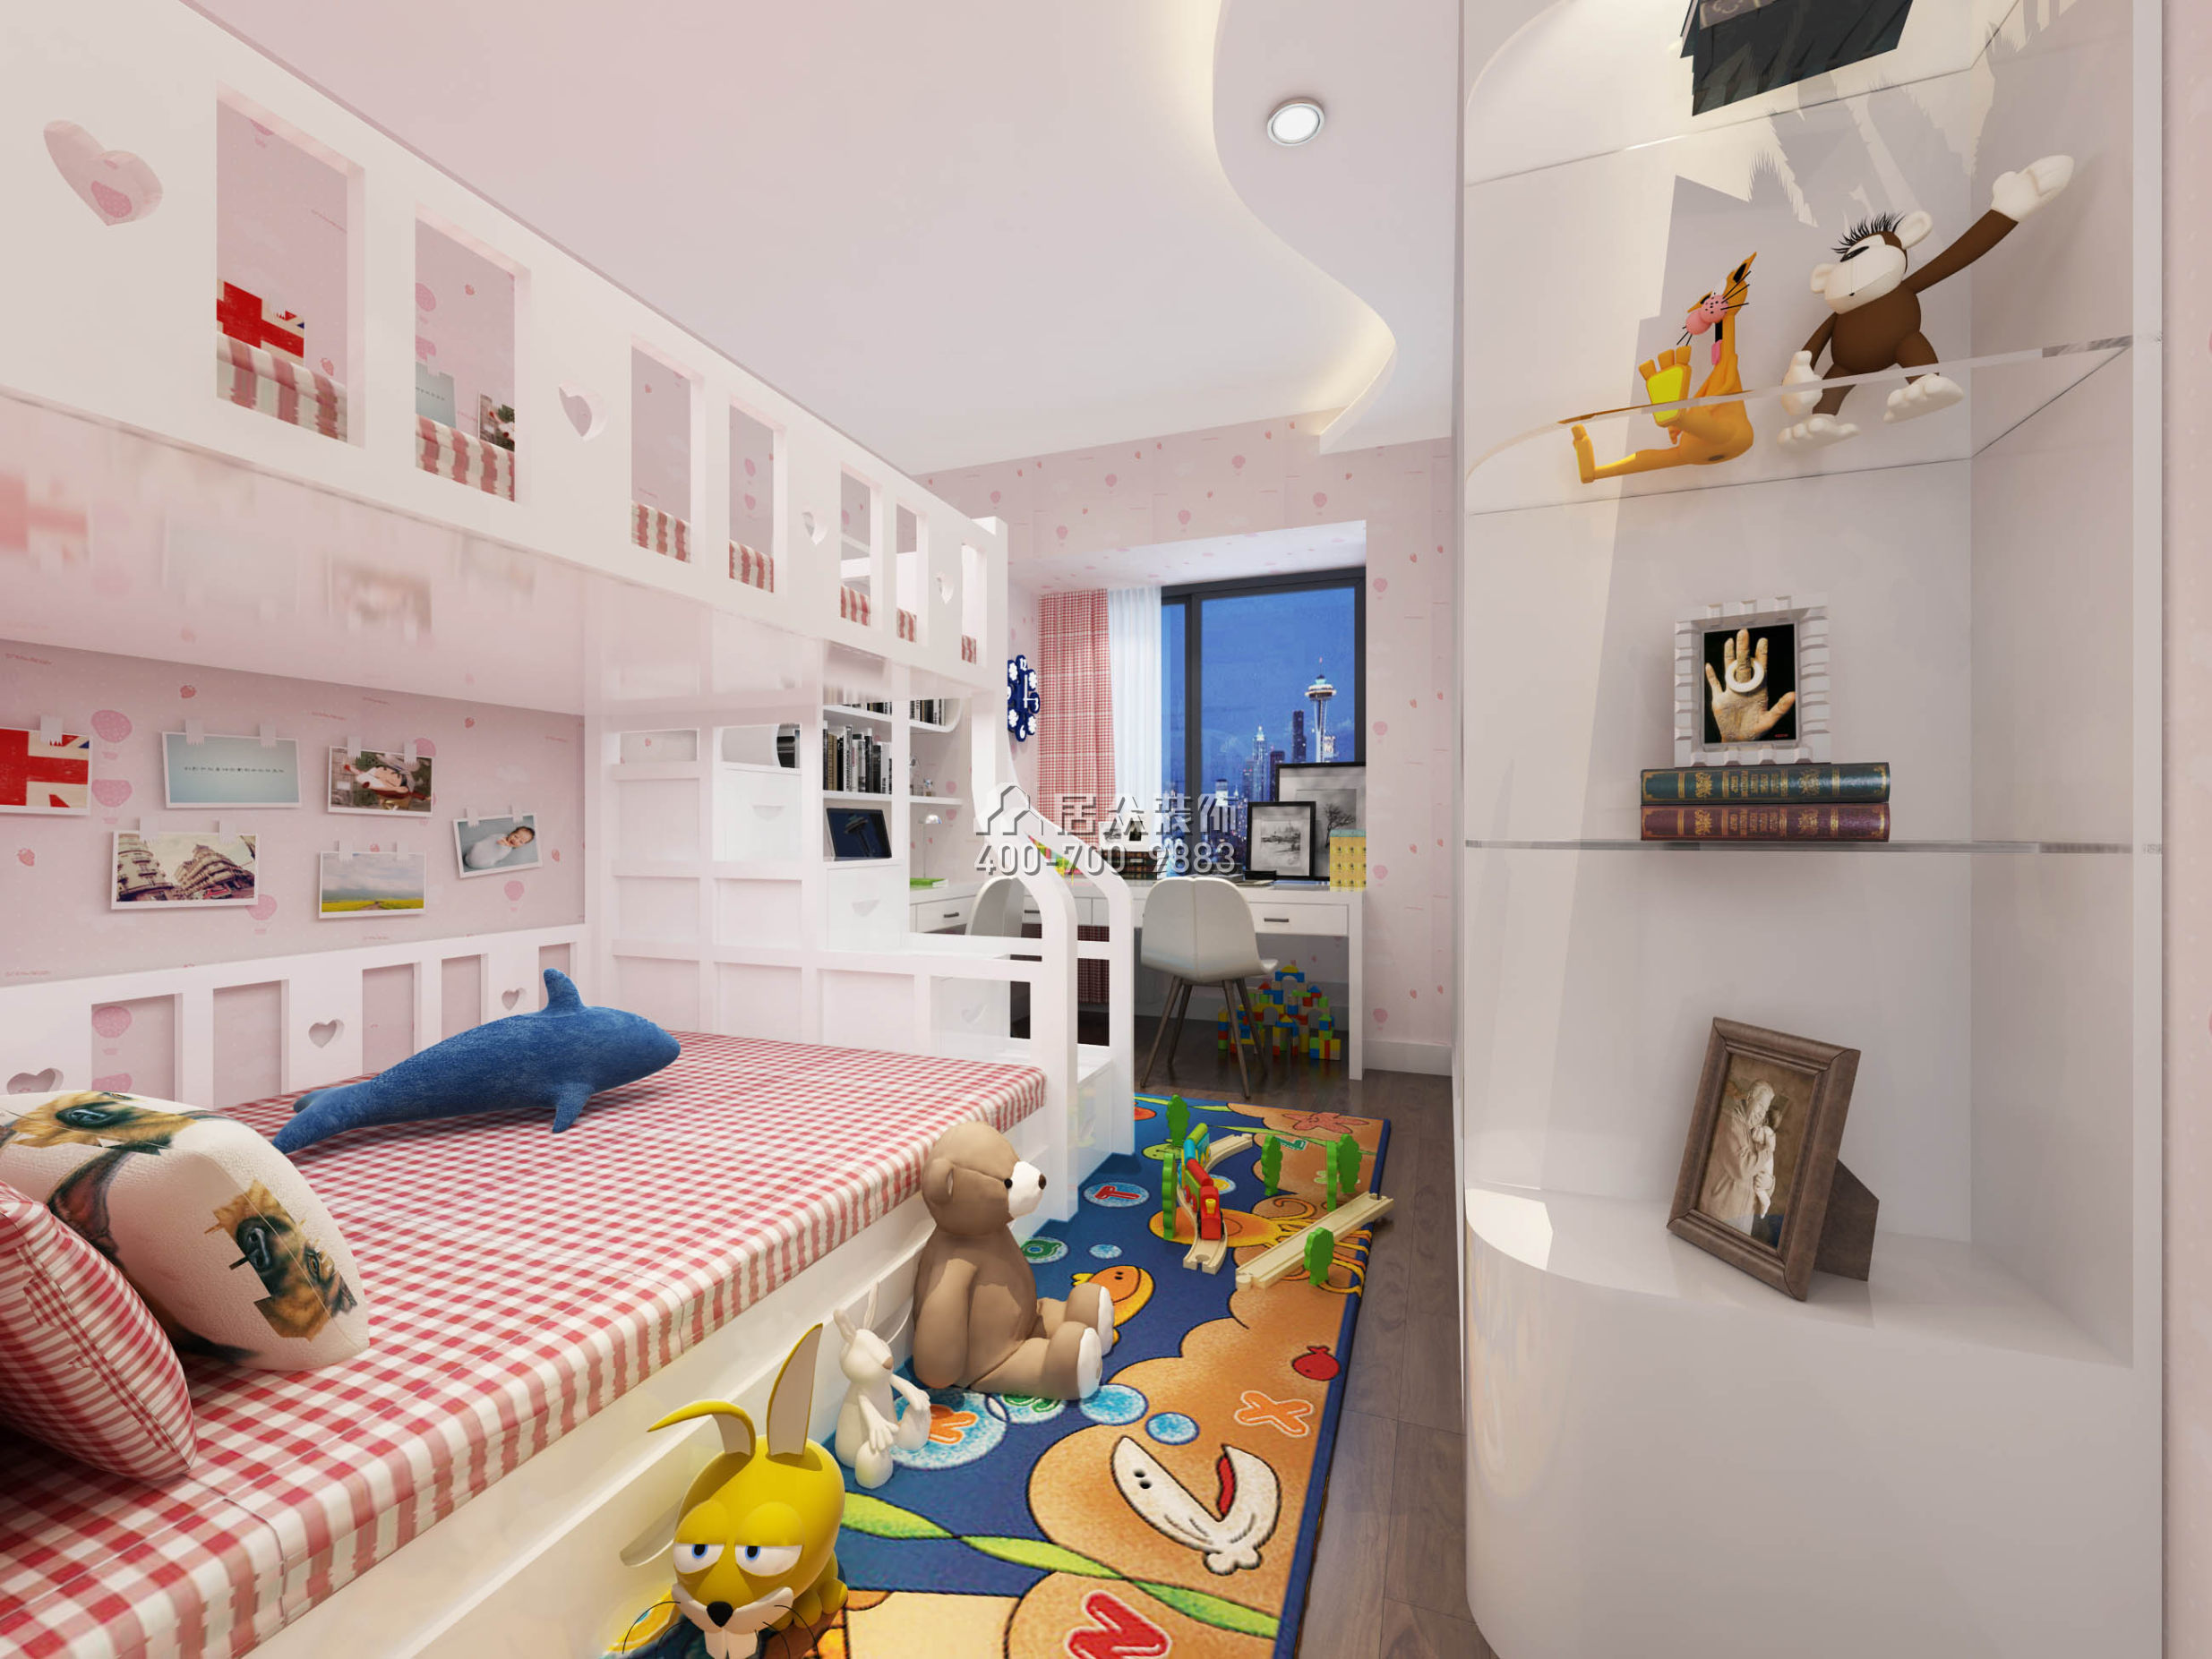 宏发嘉域89平方米欧式风格平层户型儿童房装修效果图